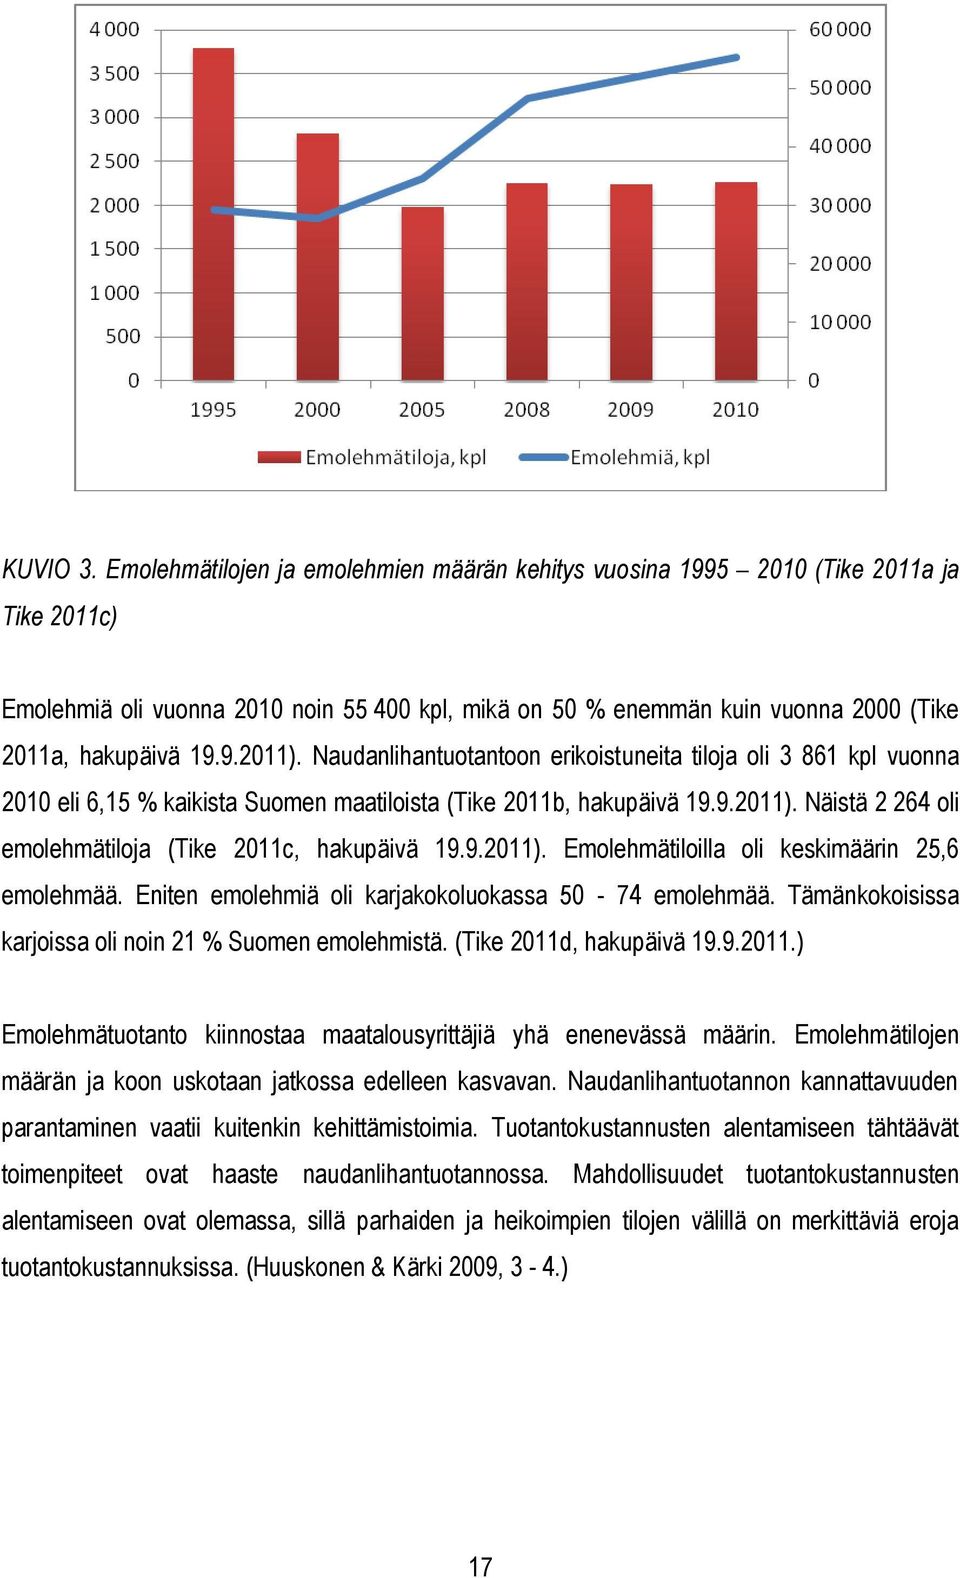 Naudanlihantuotantoon erikoistuneita tiloja oli 3 861 kpl vuonna 2010 eli 6,15 % kaikista Suomen maatiloista (Tike 2011b, hakupäivä 19.9.2011).